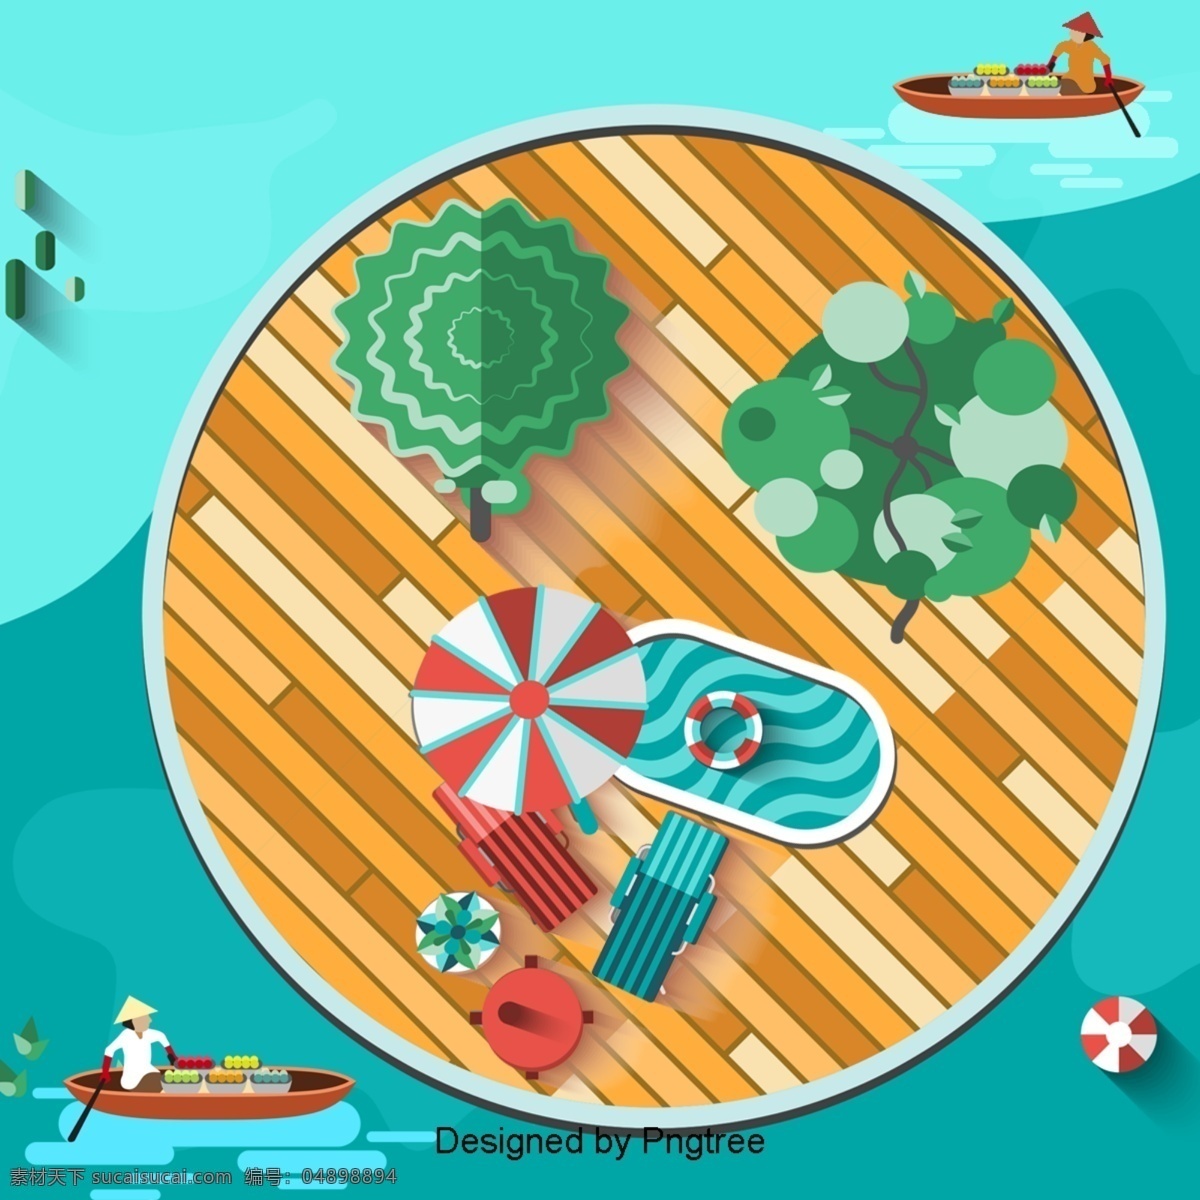 泰国 节日 水 市场 风景 度假 遮阳伞 游泳 圈 躺椅 粮食 船 水果 人物 划船